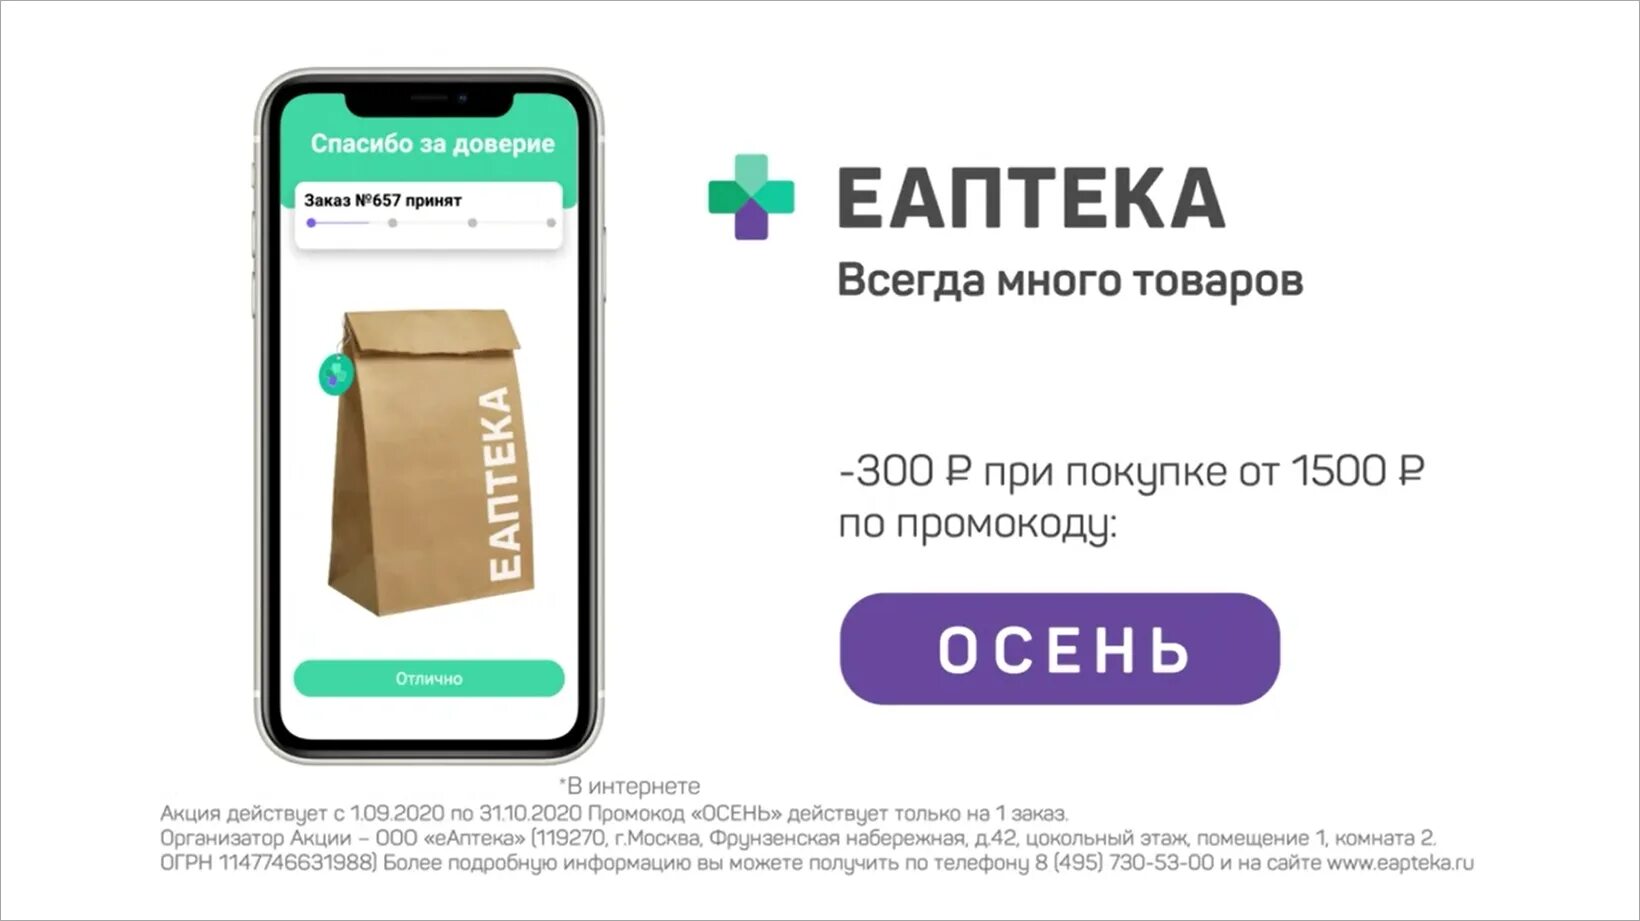 ЕАПТЕКА. ЕАПТЕКА реклама. ЕАПТЕКА приложение. Е-аптека интернет.